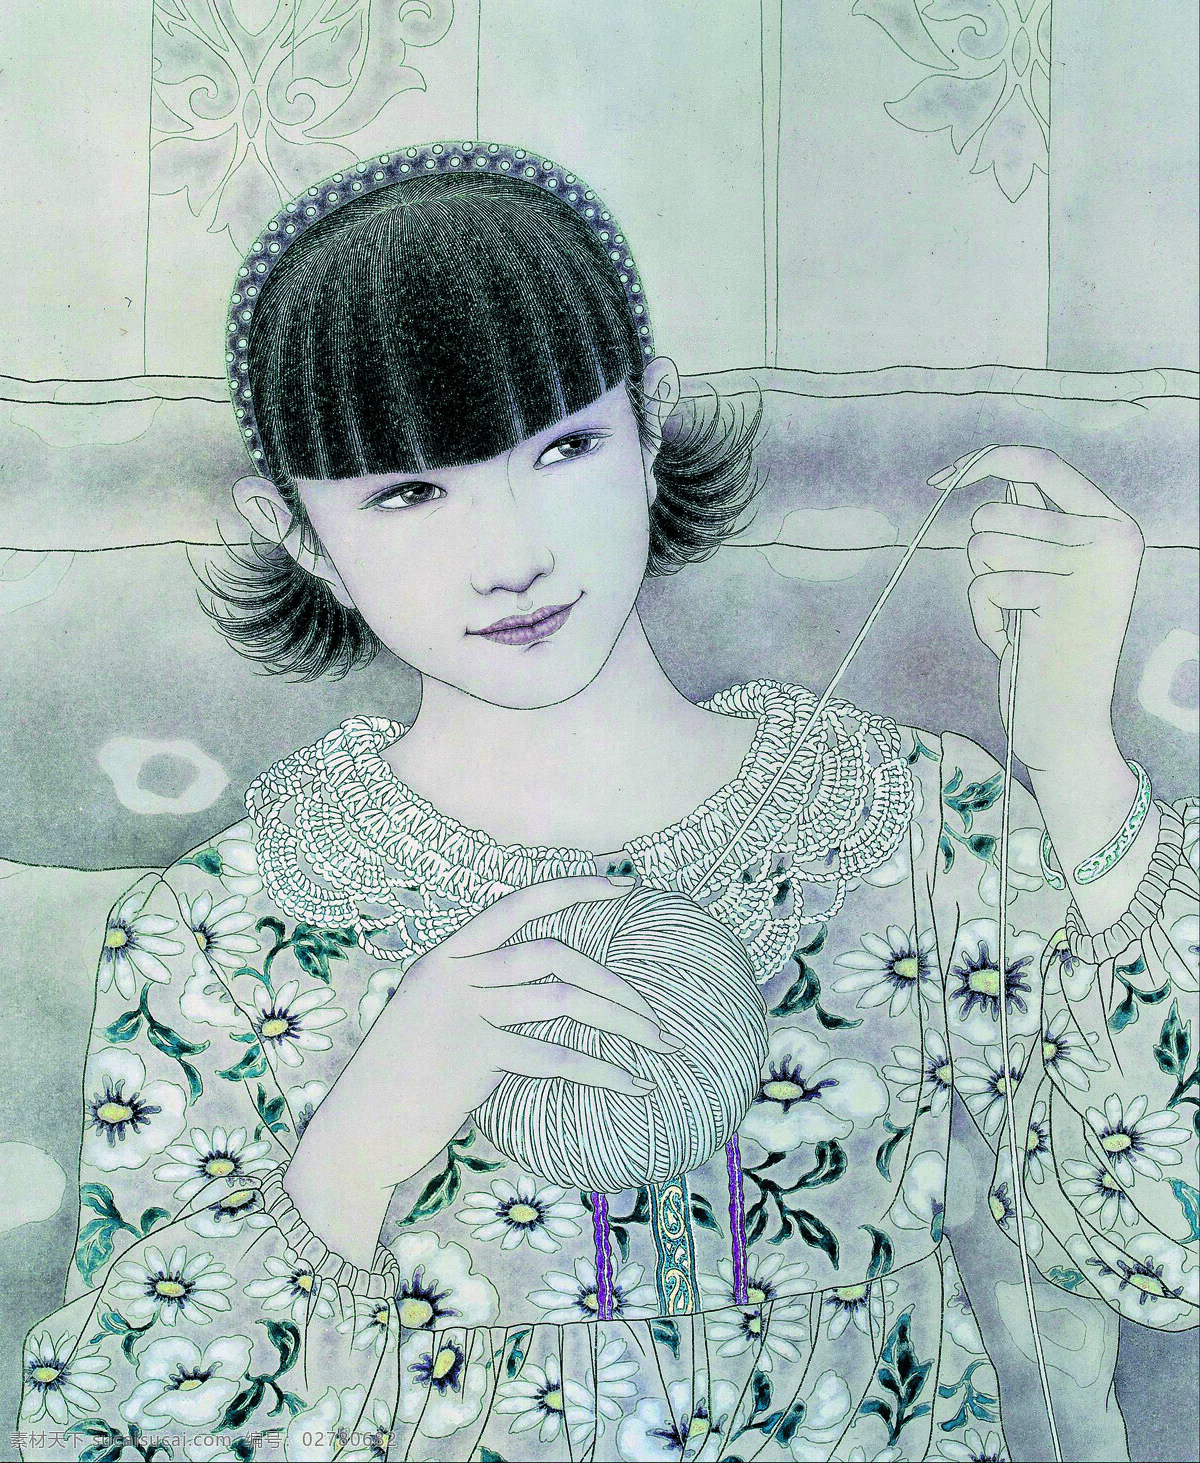 付洛红人物画 美术 中国画 工笔画 人物画 女人 女孩 少女 姑娘 文化艺术 绘画书法